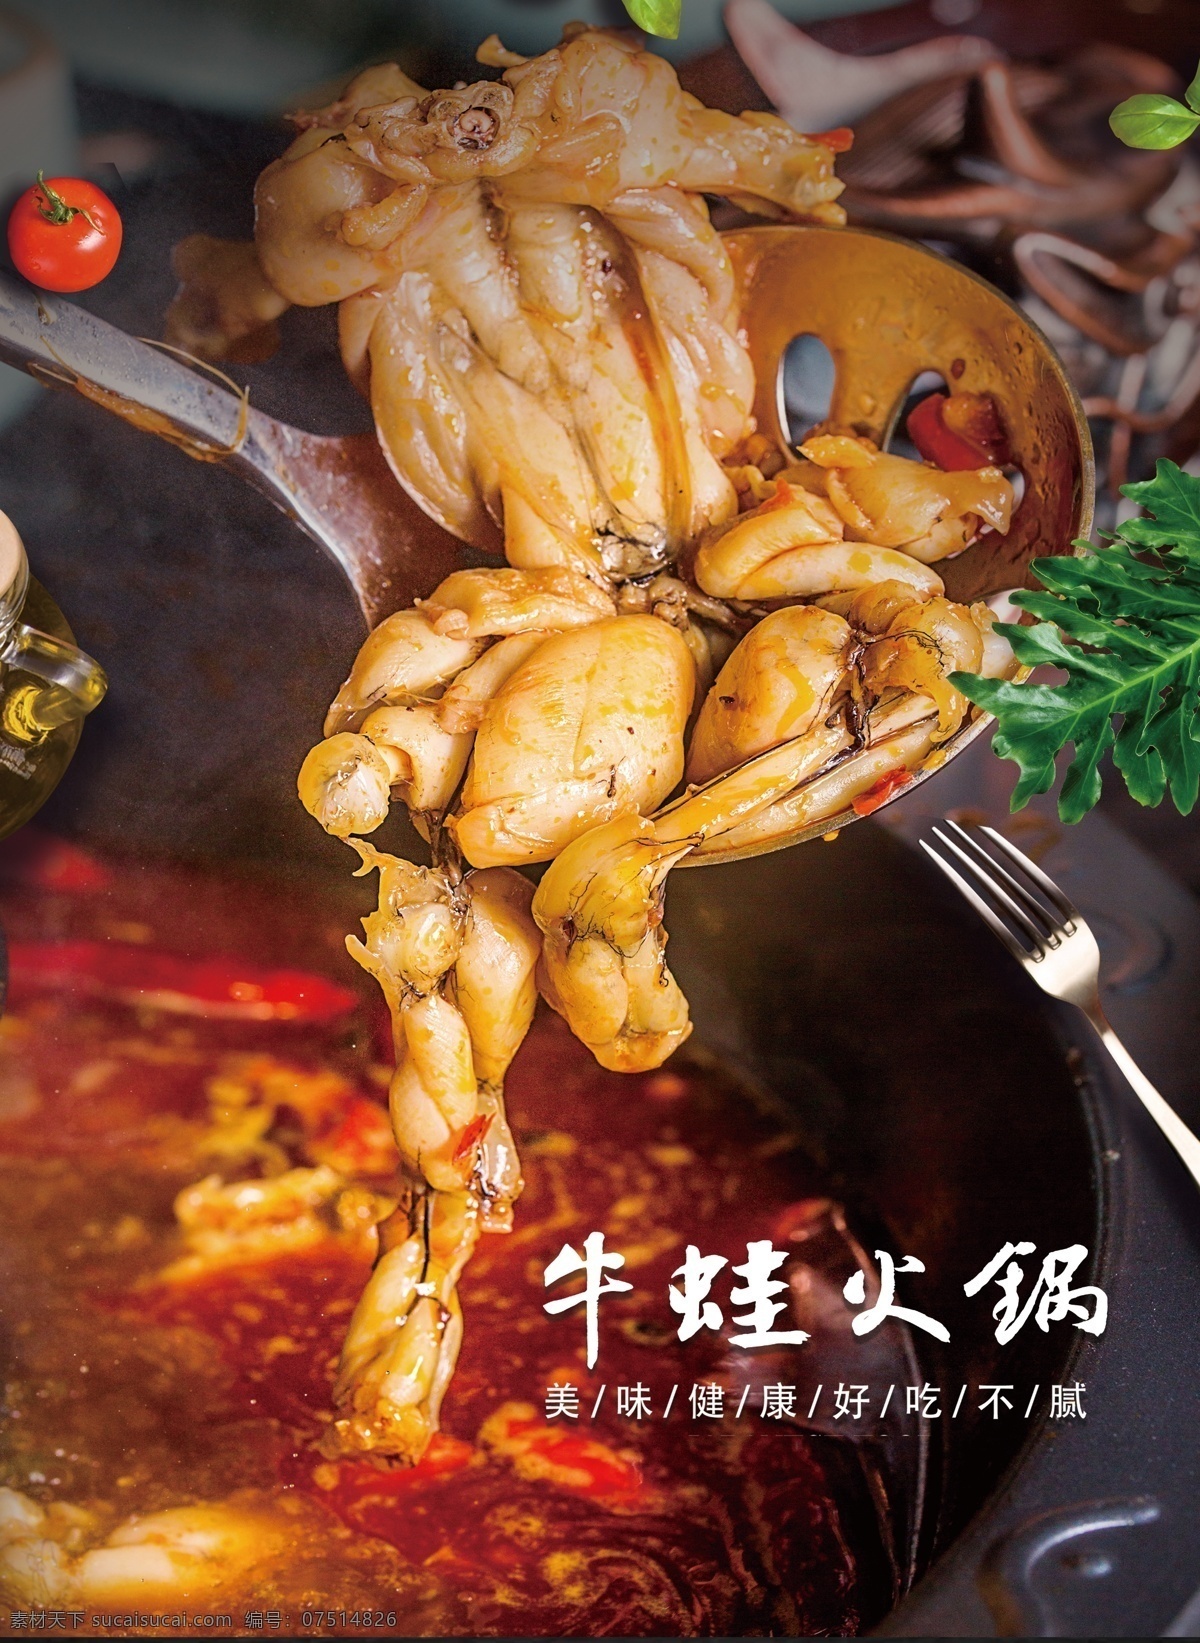 牛蛙 火锅 红汤 美食 菜单 展板